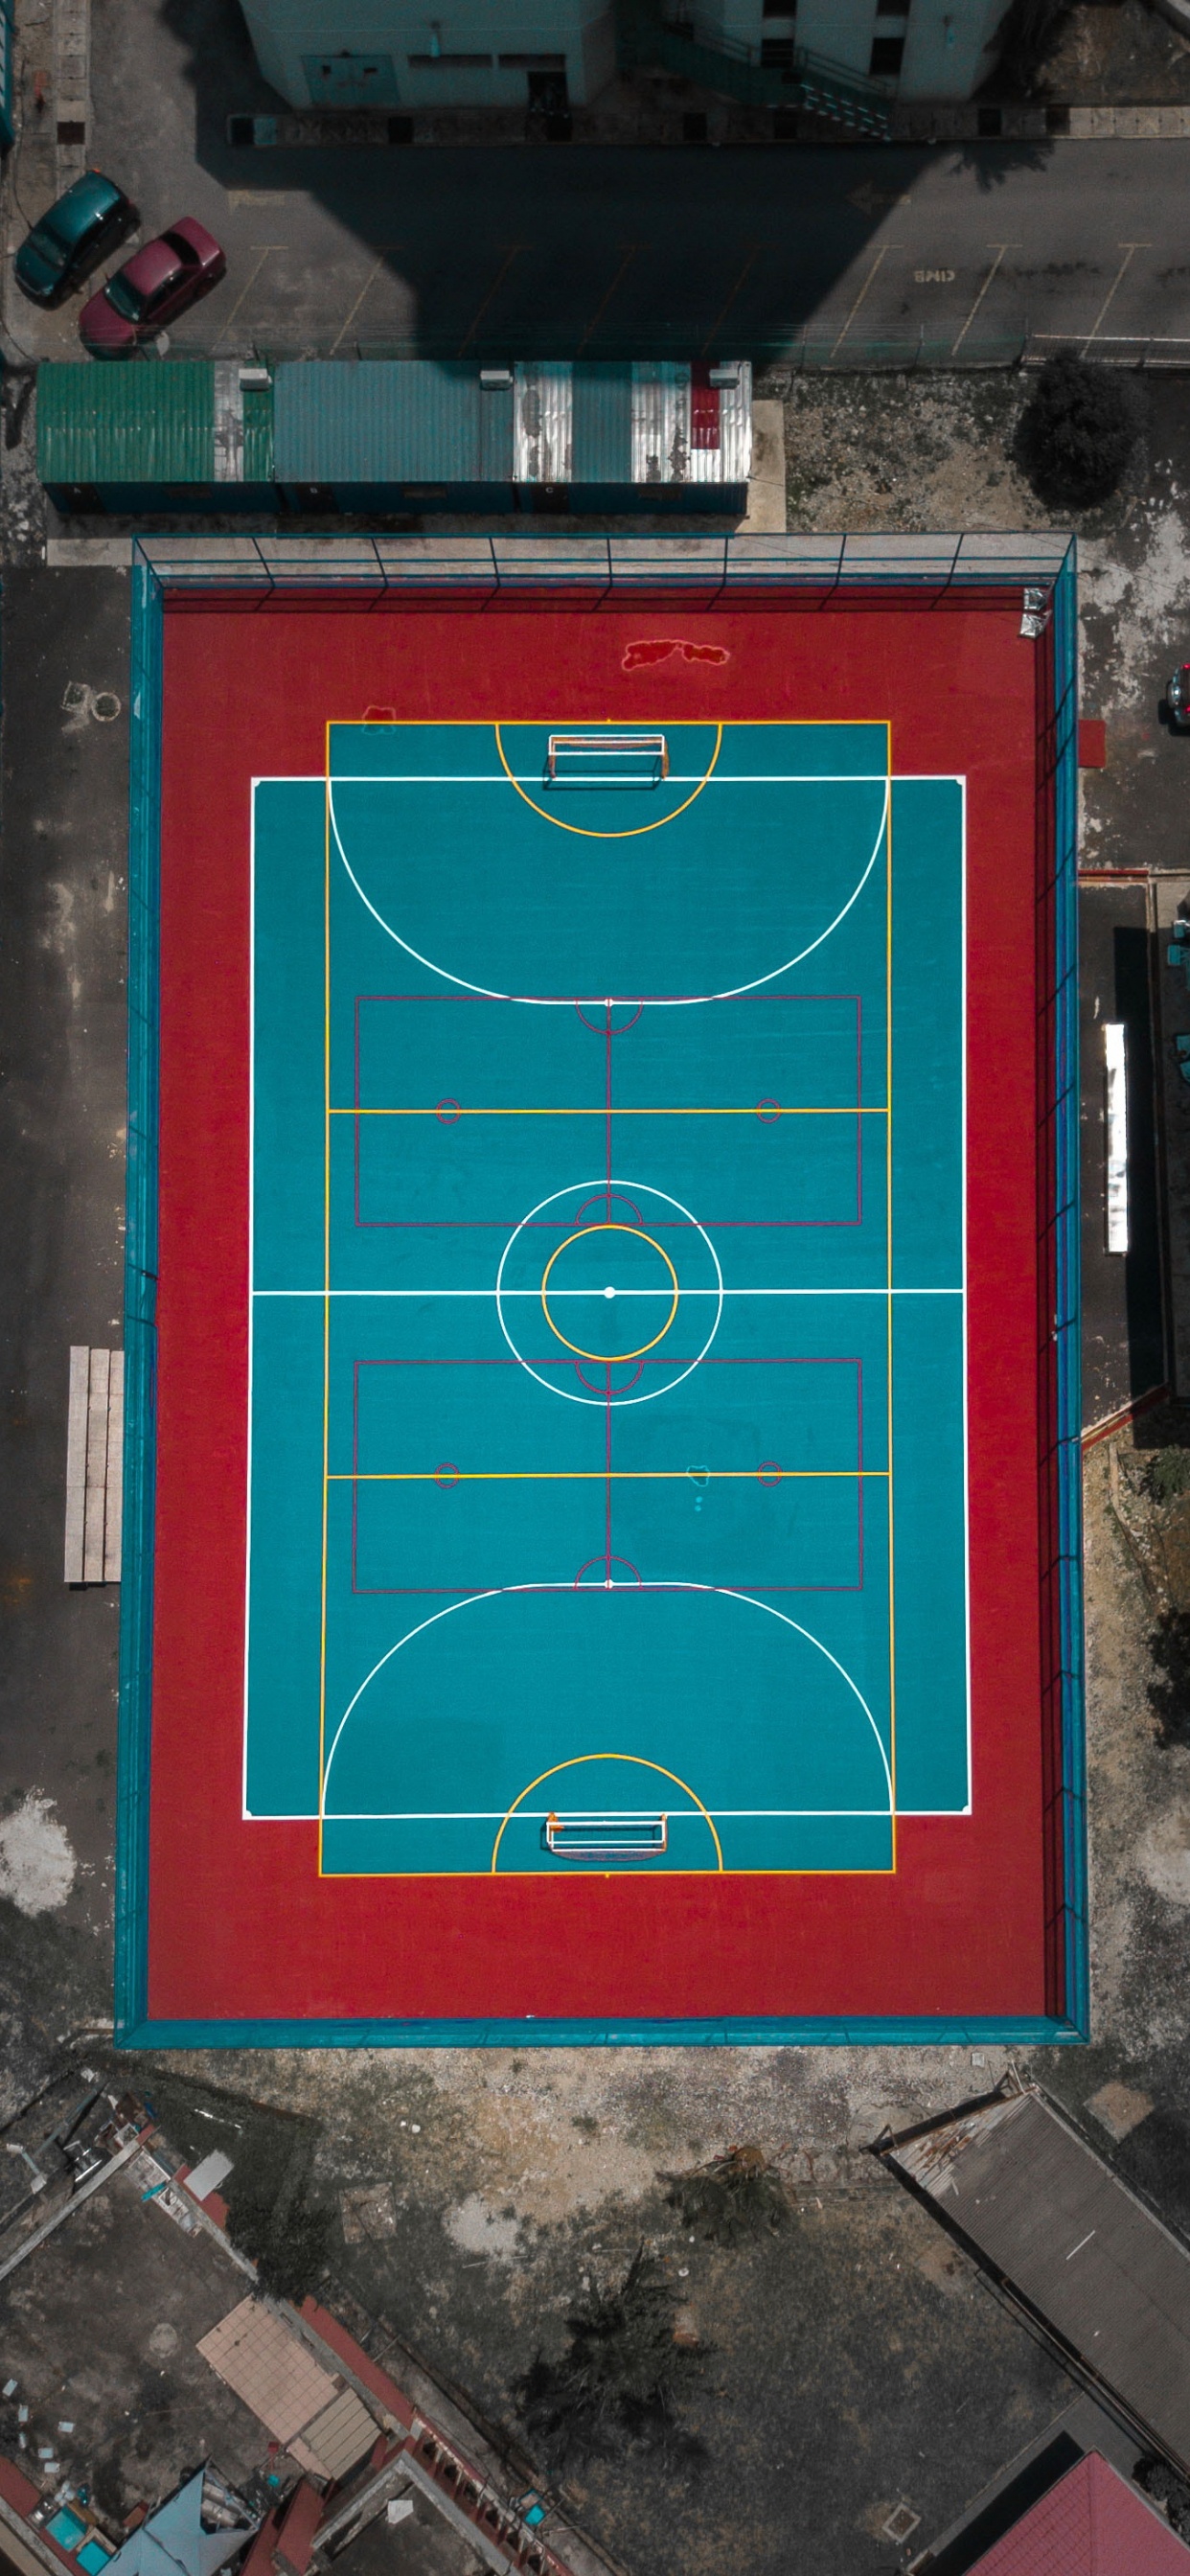 五人足球, 篮球场, 矩形, 木, 草 壁纸 1242x2688 允许